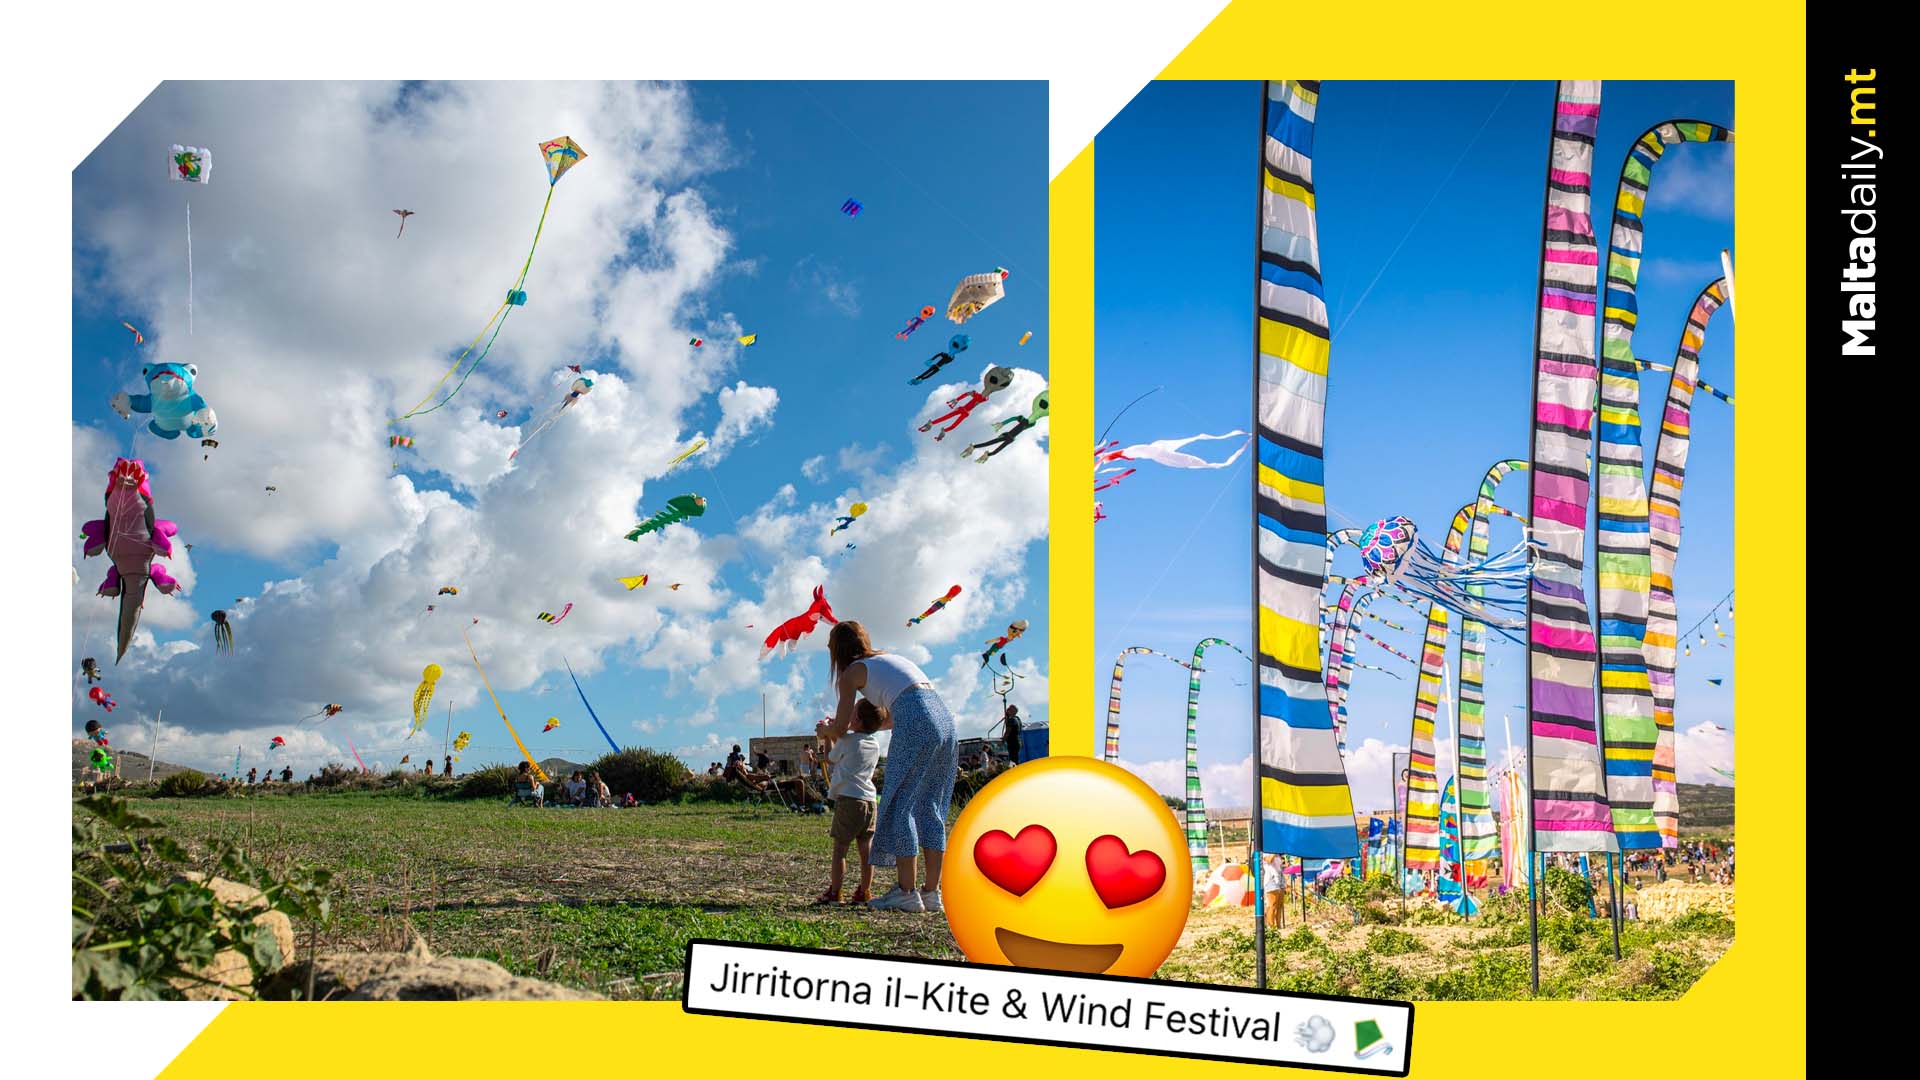 Return Of Kite & Wind Festival In Gozo Announced